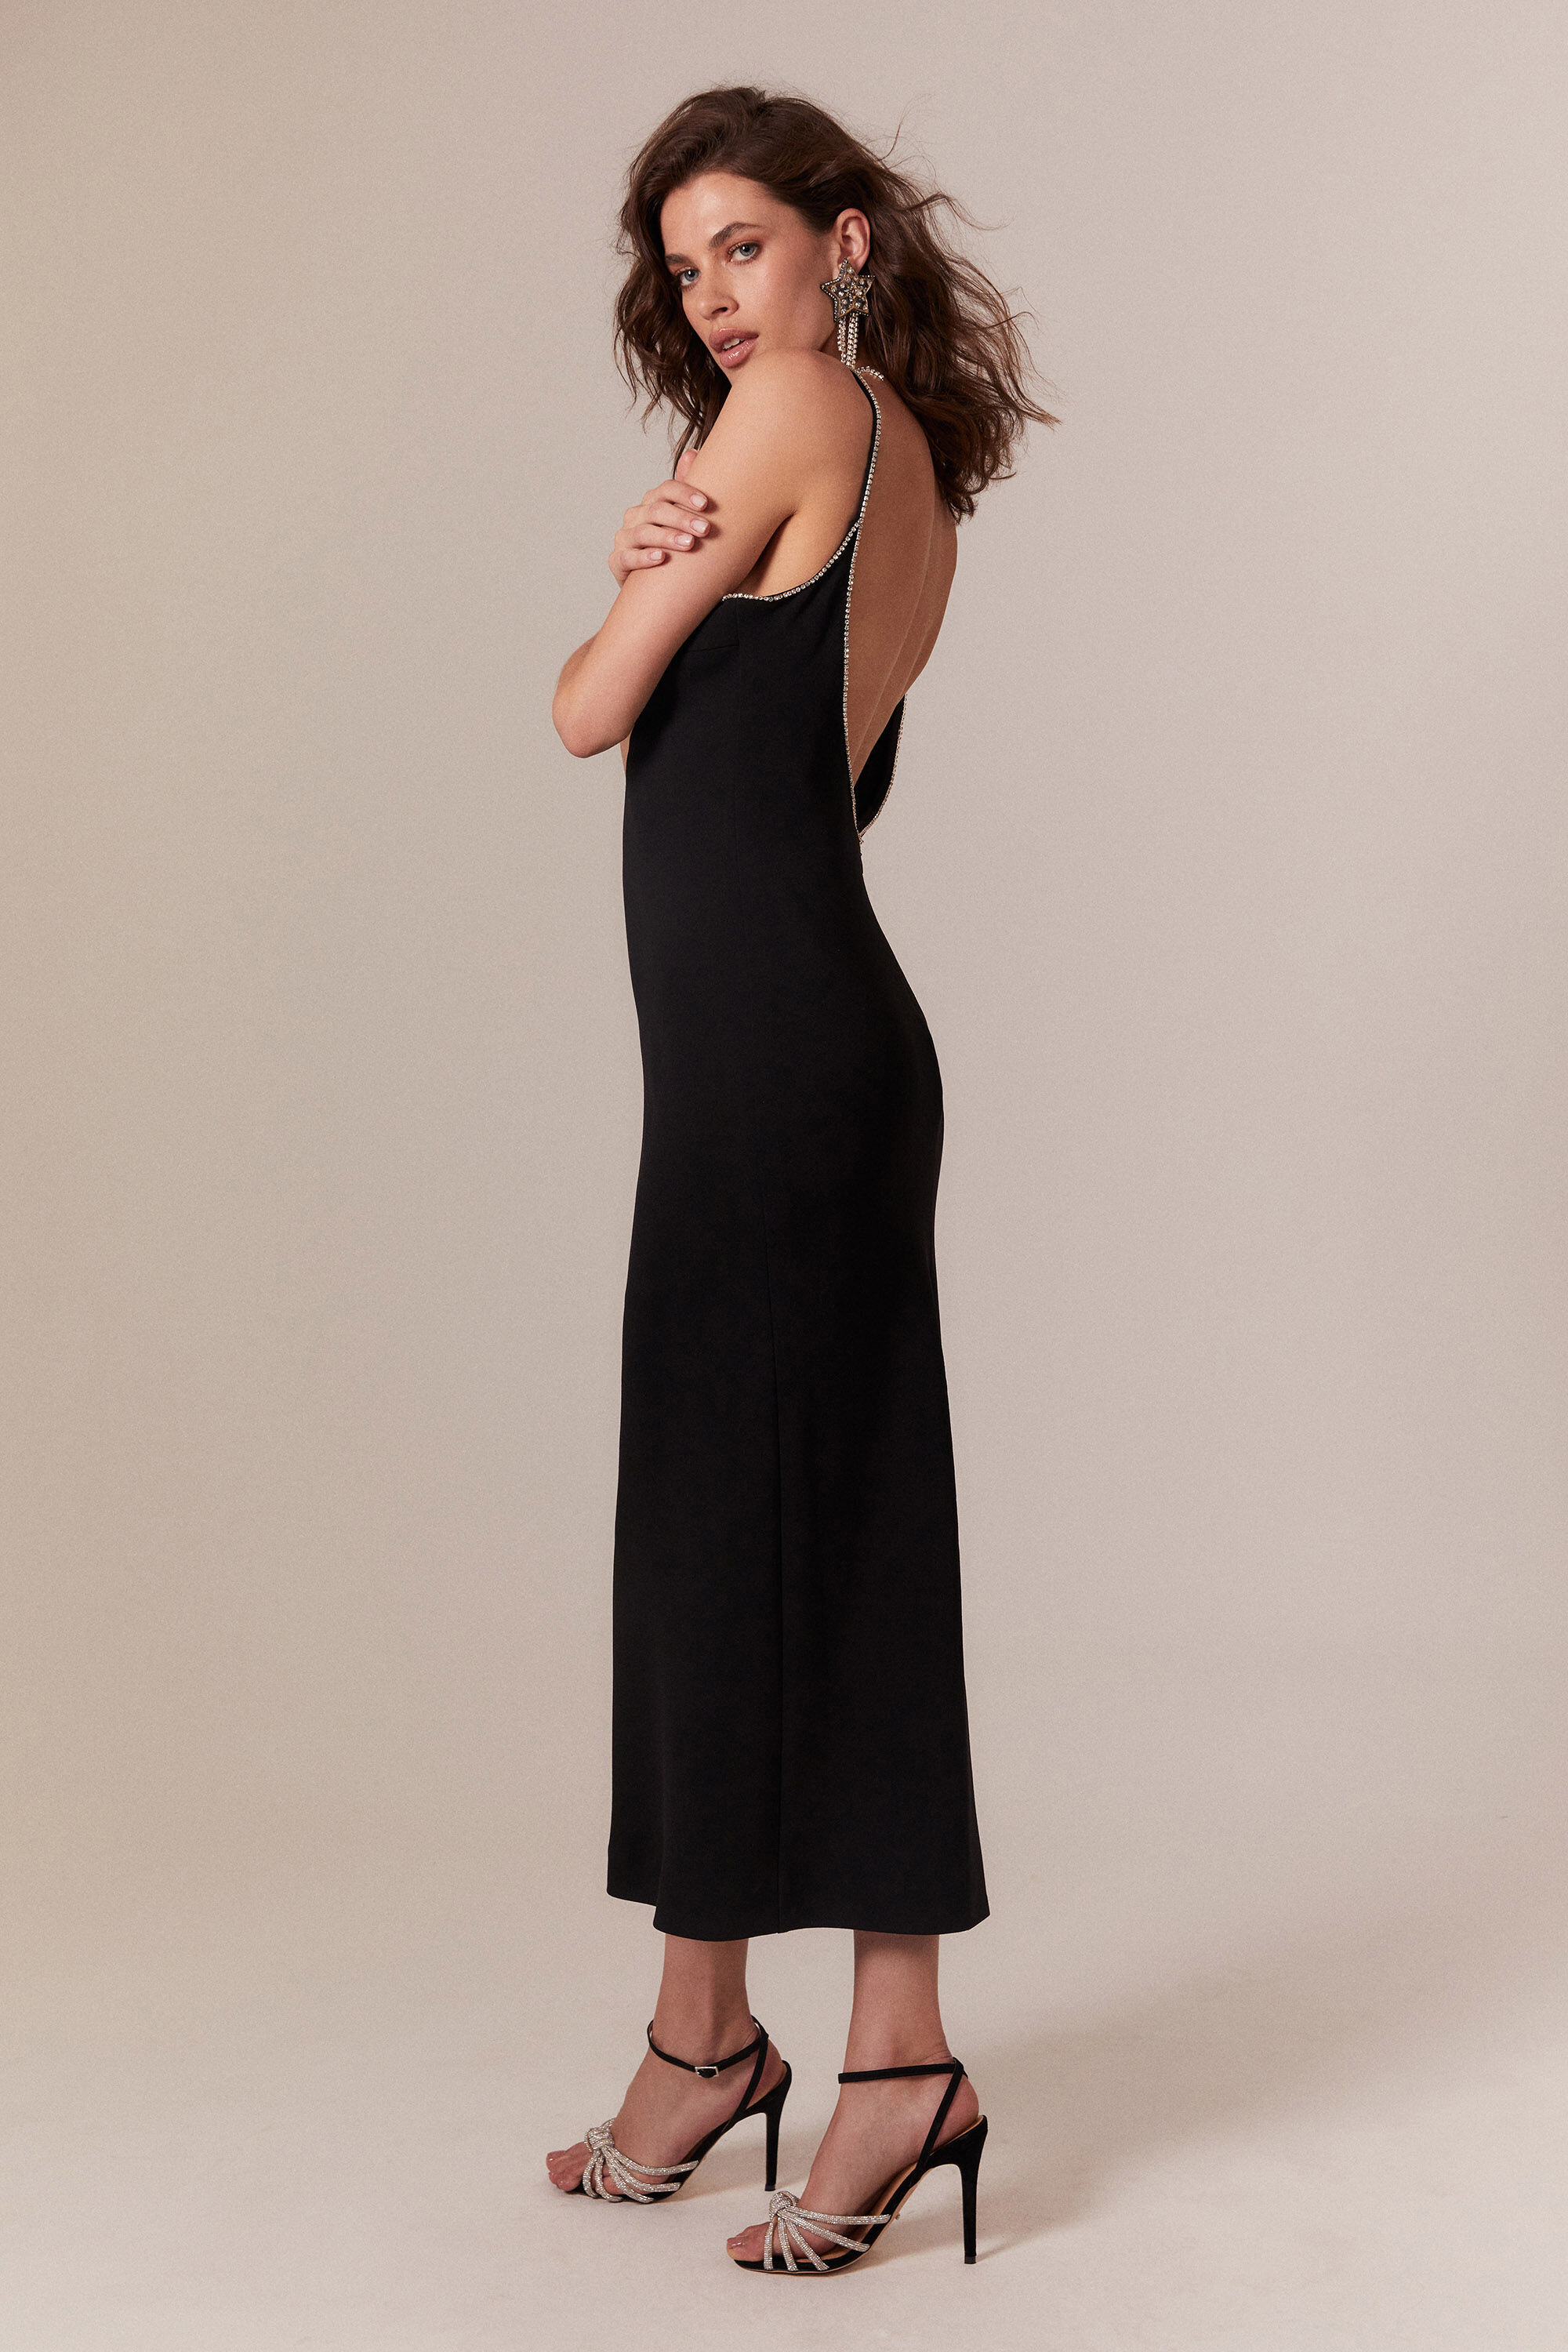 Vira Diamonte Dress In Black | Bardot